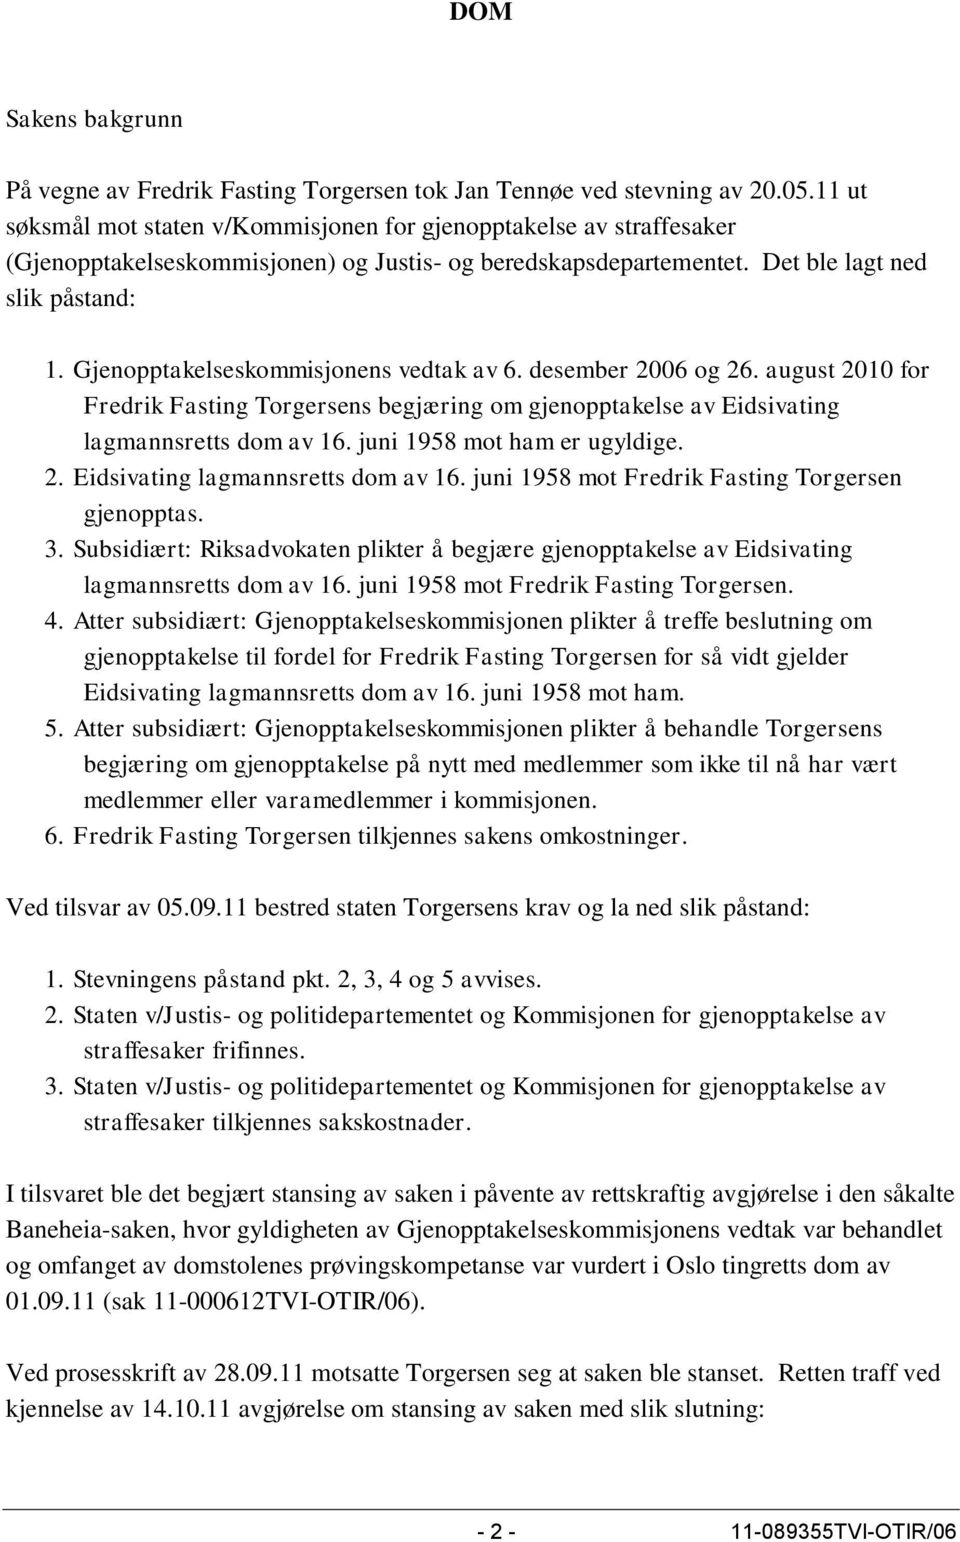 Gjenopptakelseskommisjonens vedtak av 6. desember 2006 og 26. august 2010 for Fredrik Fasting Torgersens begjæring om gjenopptakelse av Eidsivating lagmannsretts dom av 16.